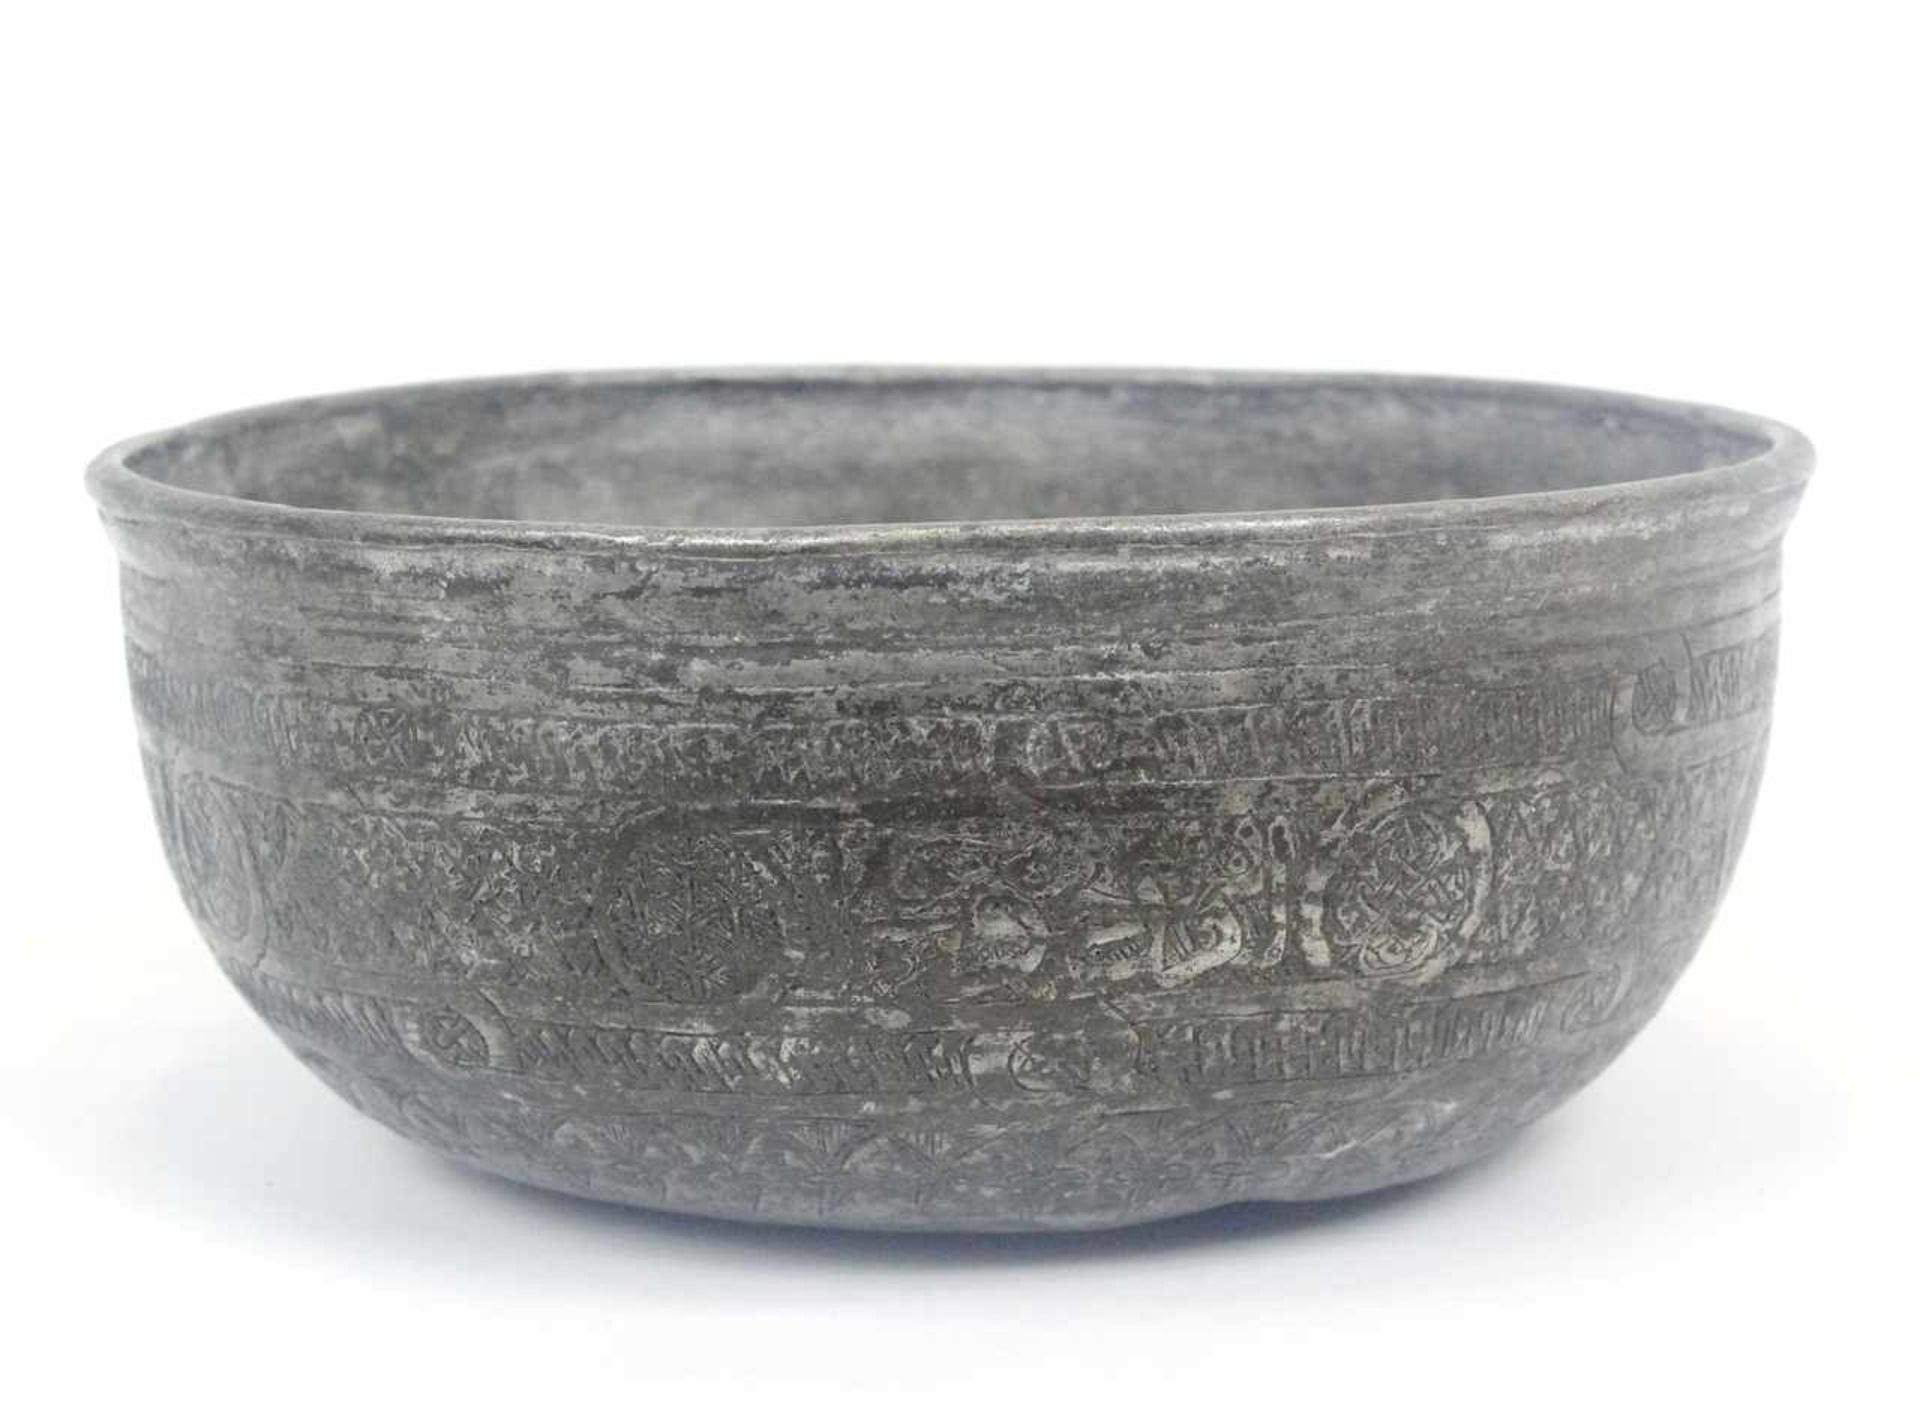 Safawiden Dynastie verzinnte und gravierte Schale aus Kupferbronze Iran 17./18.Jhdt.